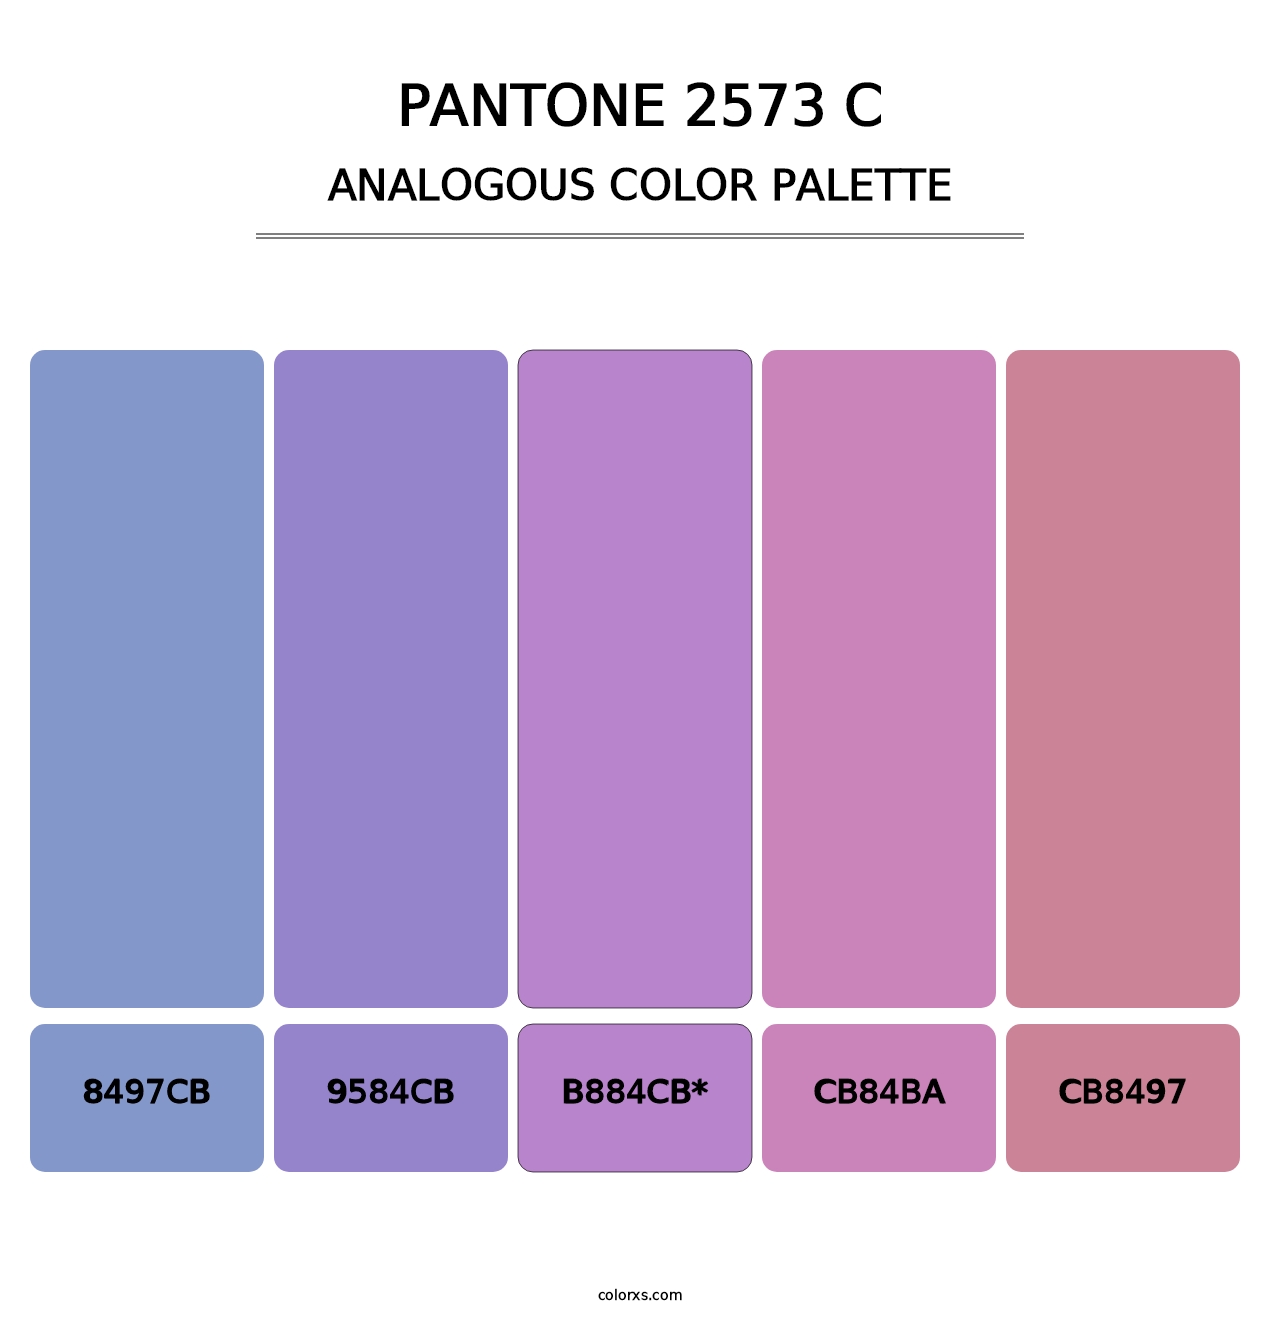 PANTONE 2573 C - Analogous Color Palette